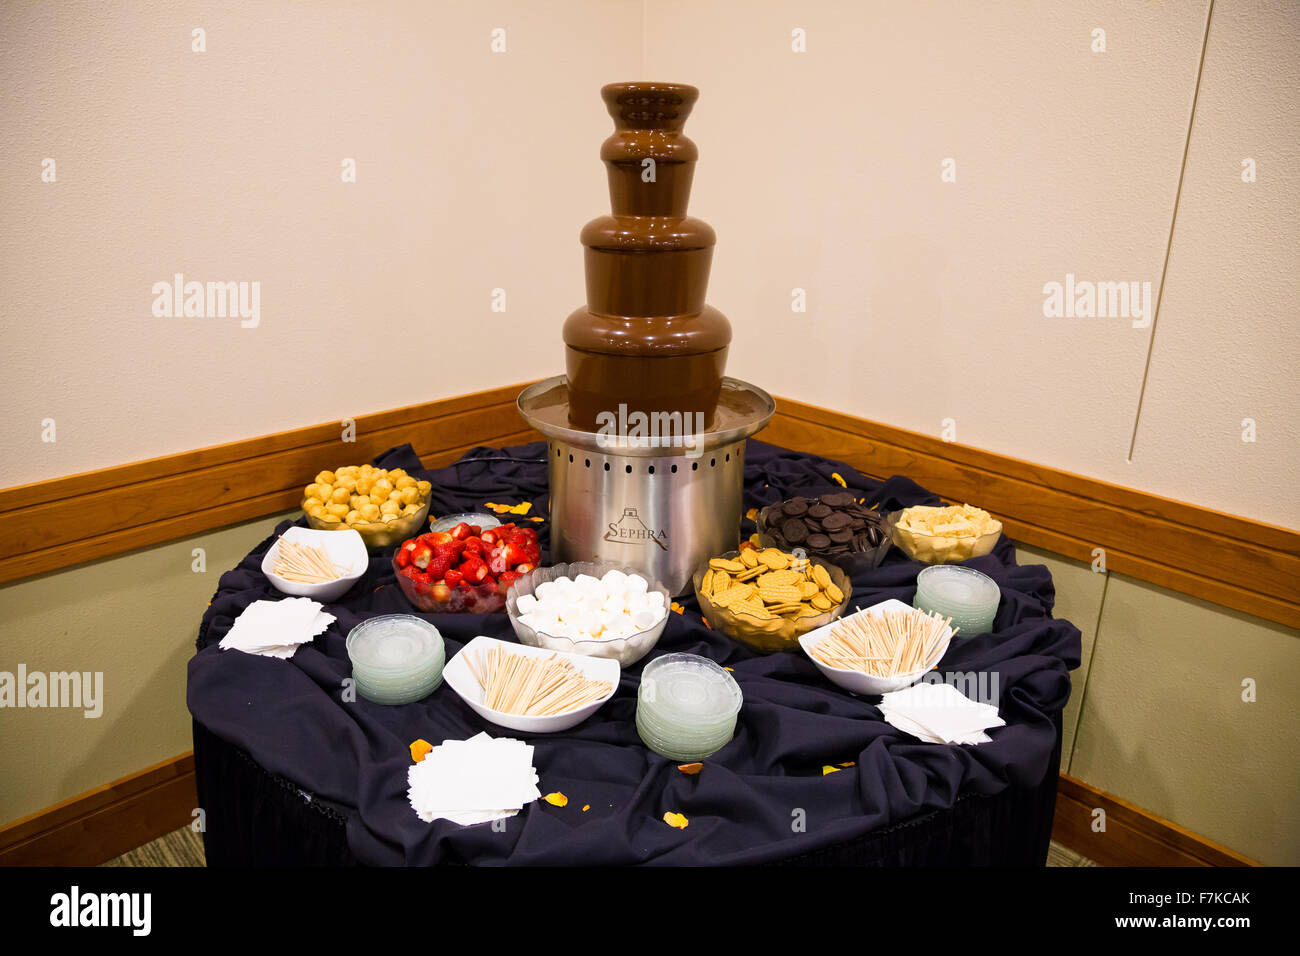 EUGENE, OR - 13 septembre 2014 : le chocolat fondu Sephra tour à une réception de mariage avec des articles à puiser dans ce dessert sucré. Banque D'Images